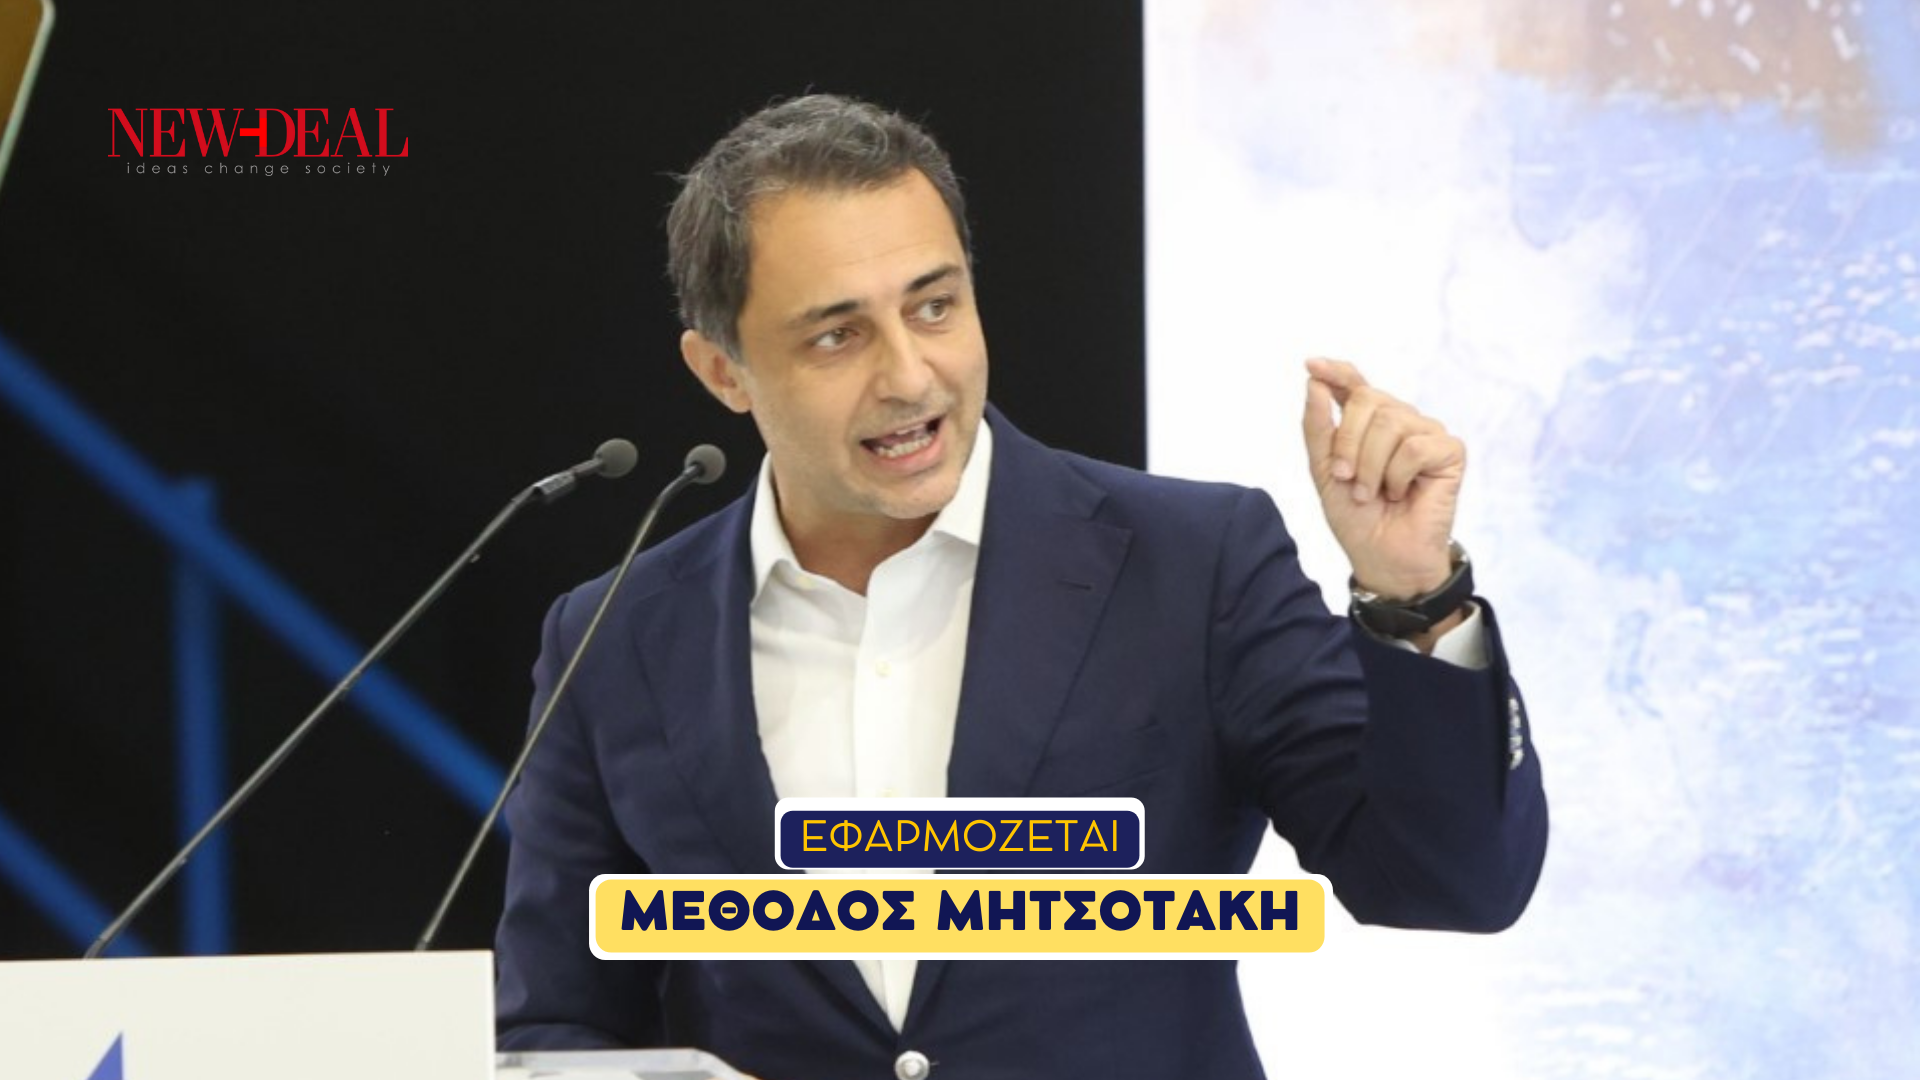 Μάξιμος Σενετάκης | Με την μέθοδο Μητσοτάκη ξεπερνάμε τις κρίσεις new Deal